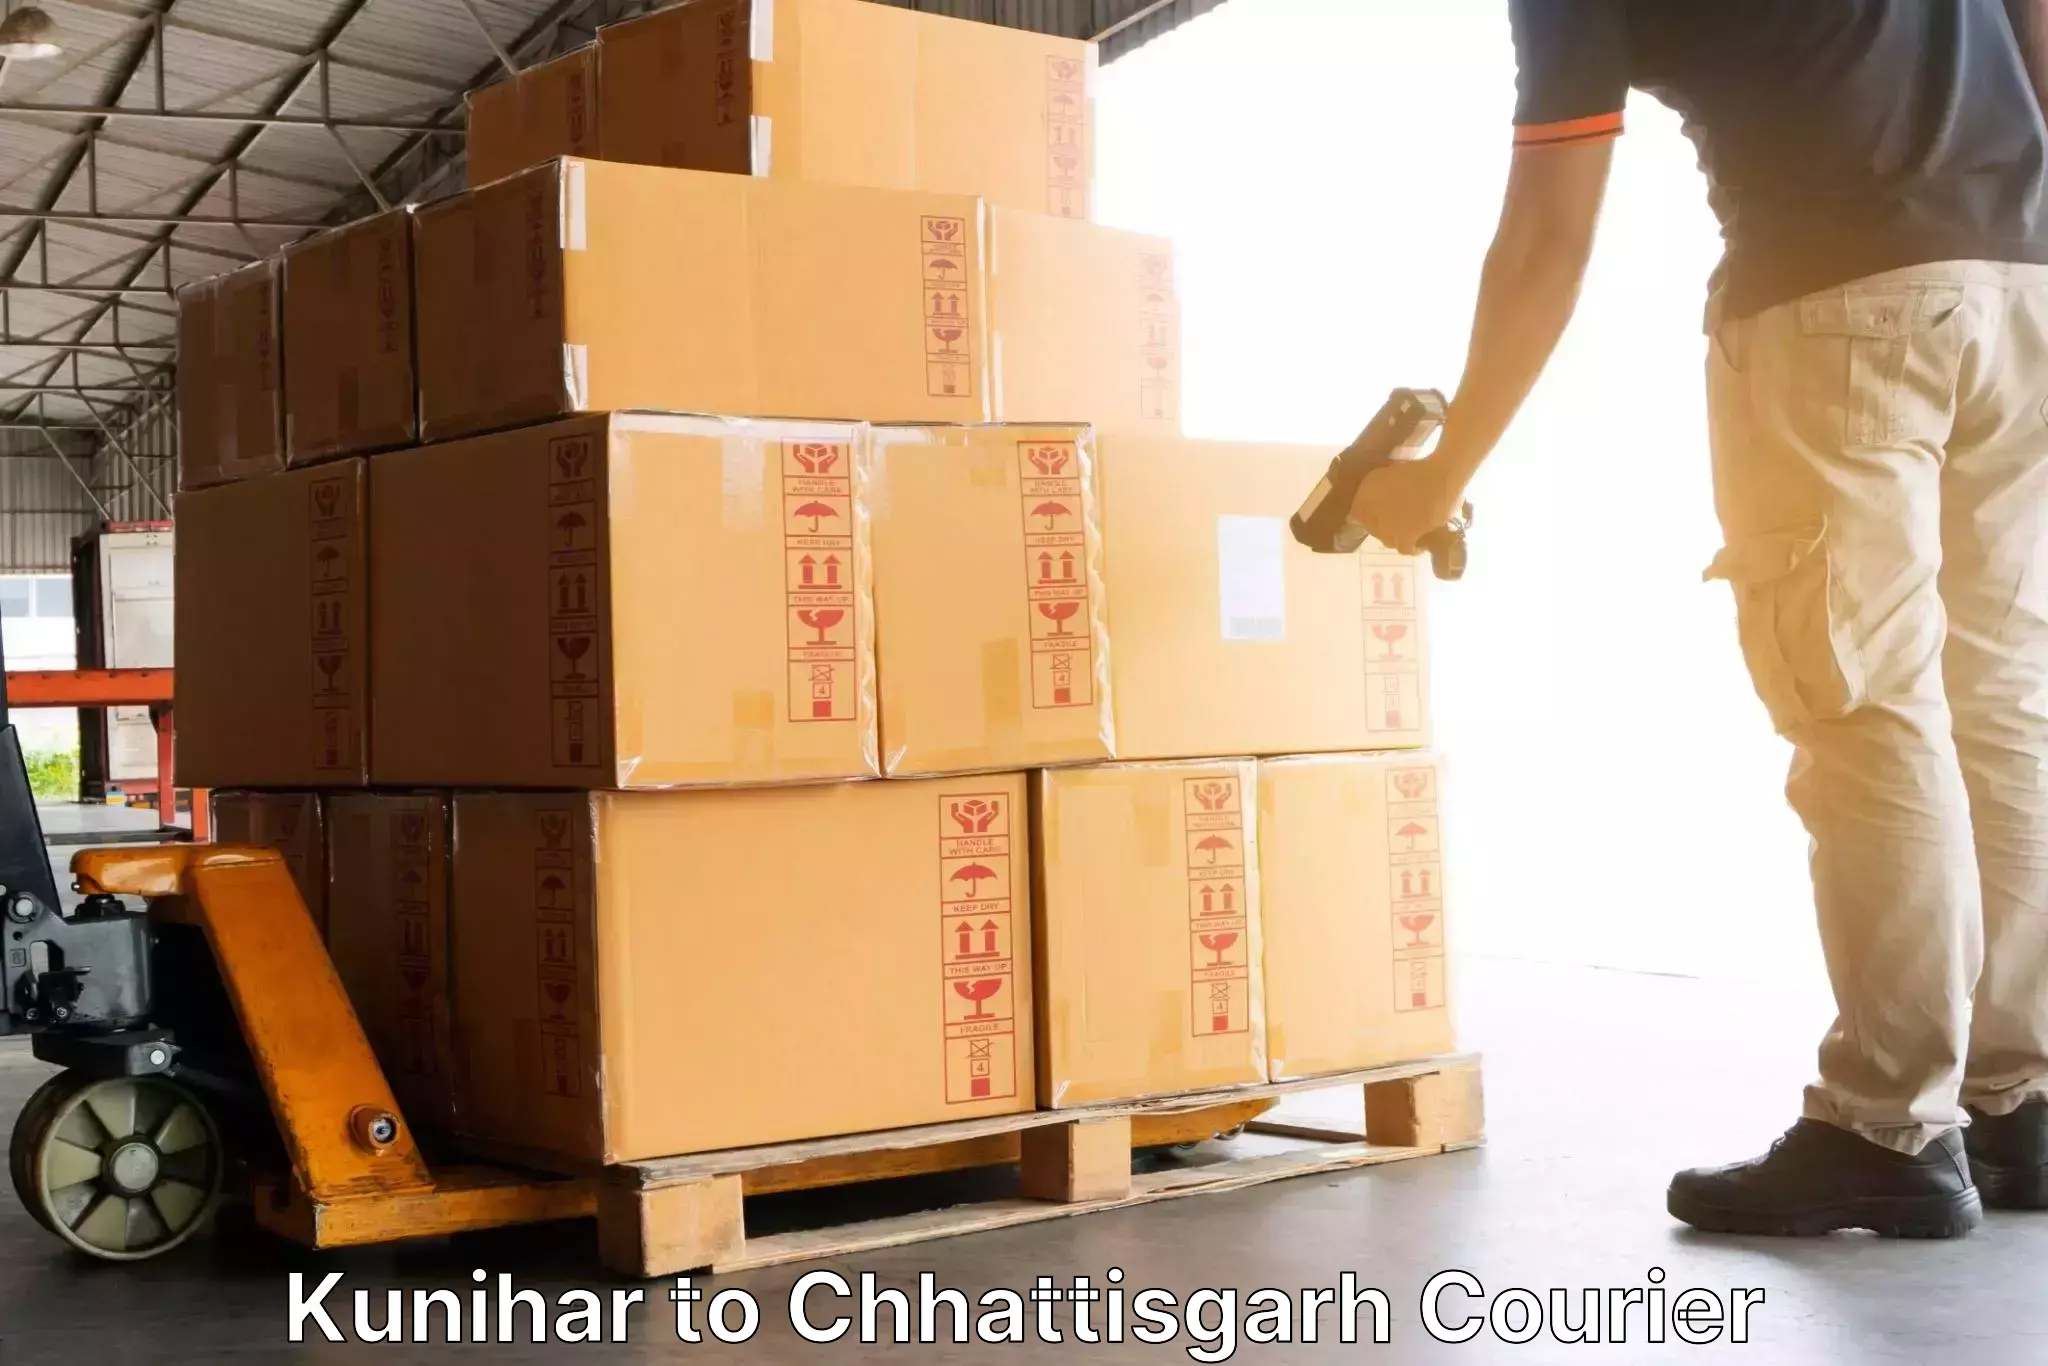 Innovative shipping solutions Kunihar to Chhattisgarh